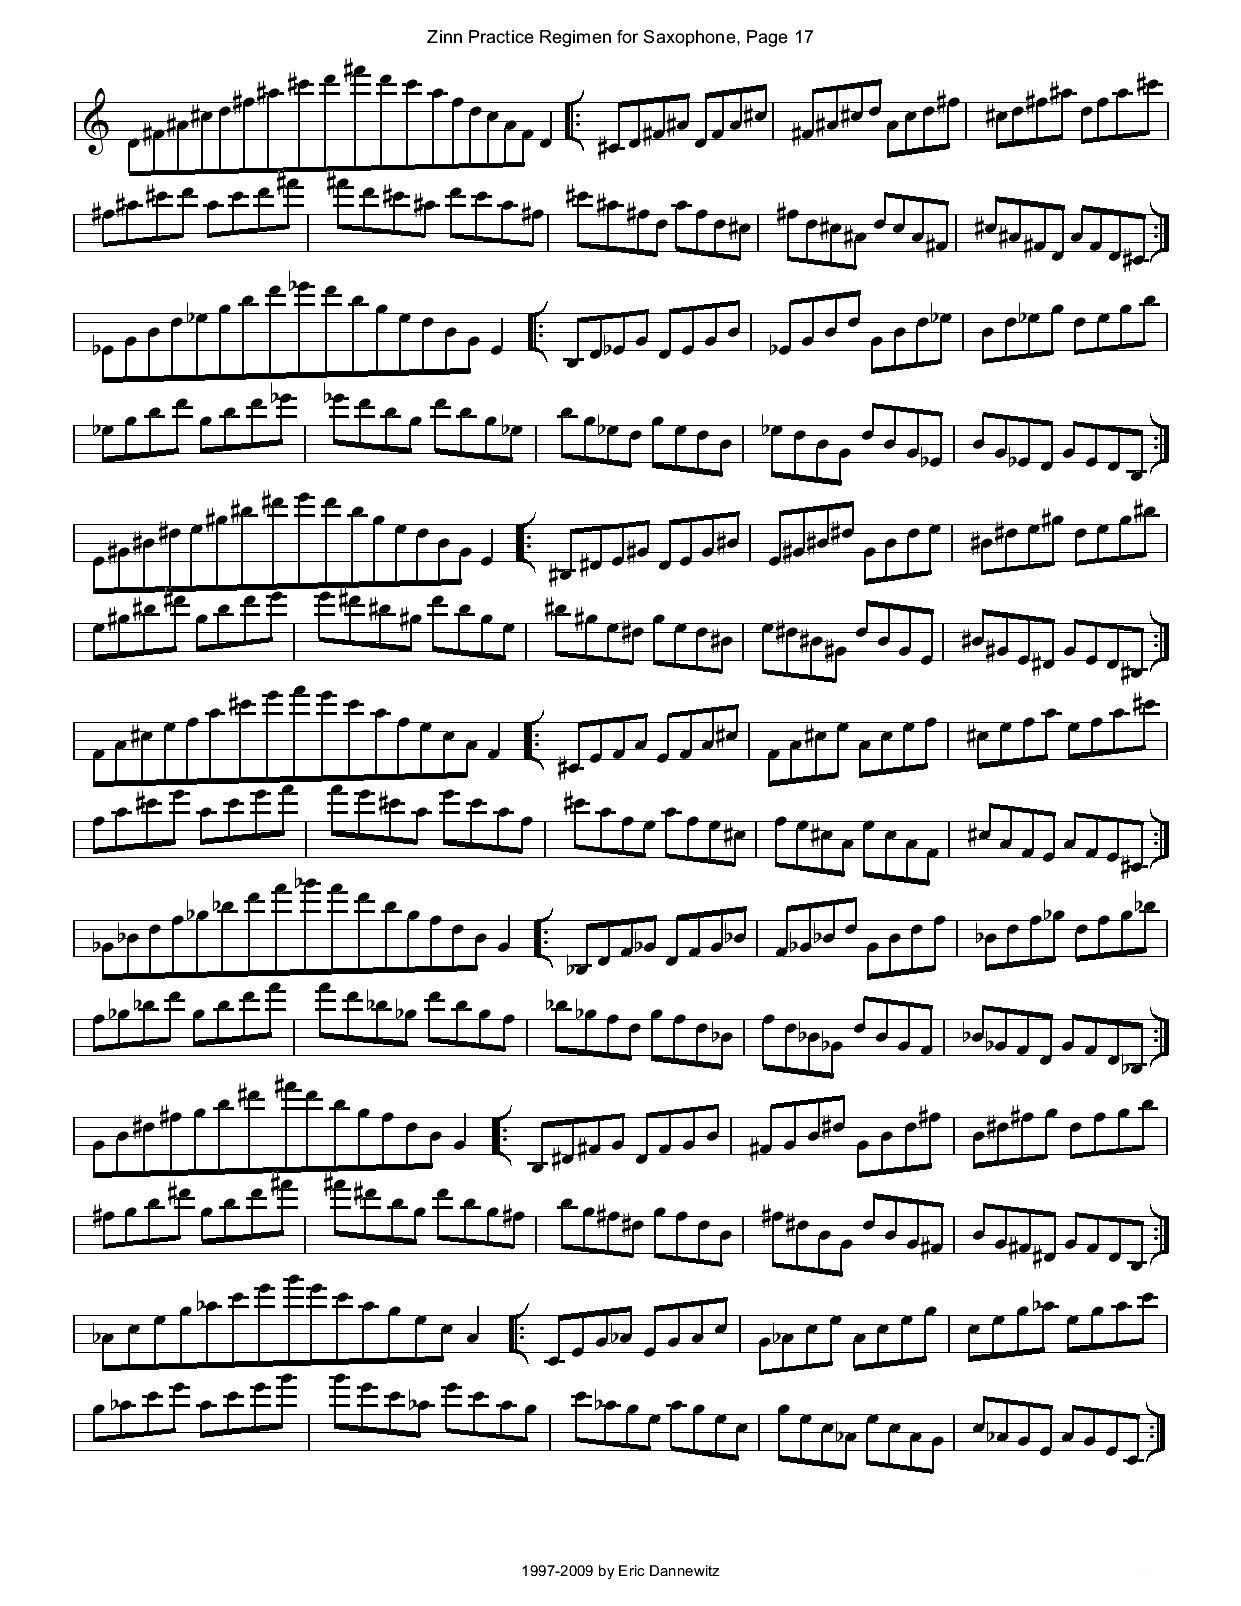 ZinnRegimenSax2009练习曲萨克斯曲谱（图20）